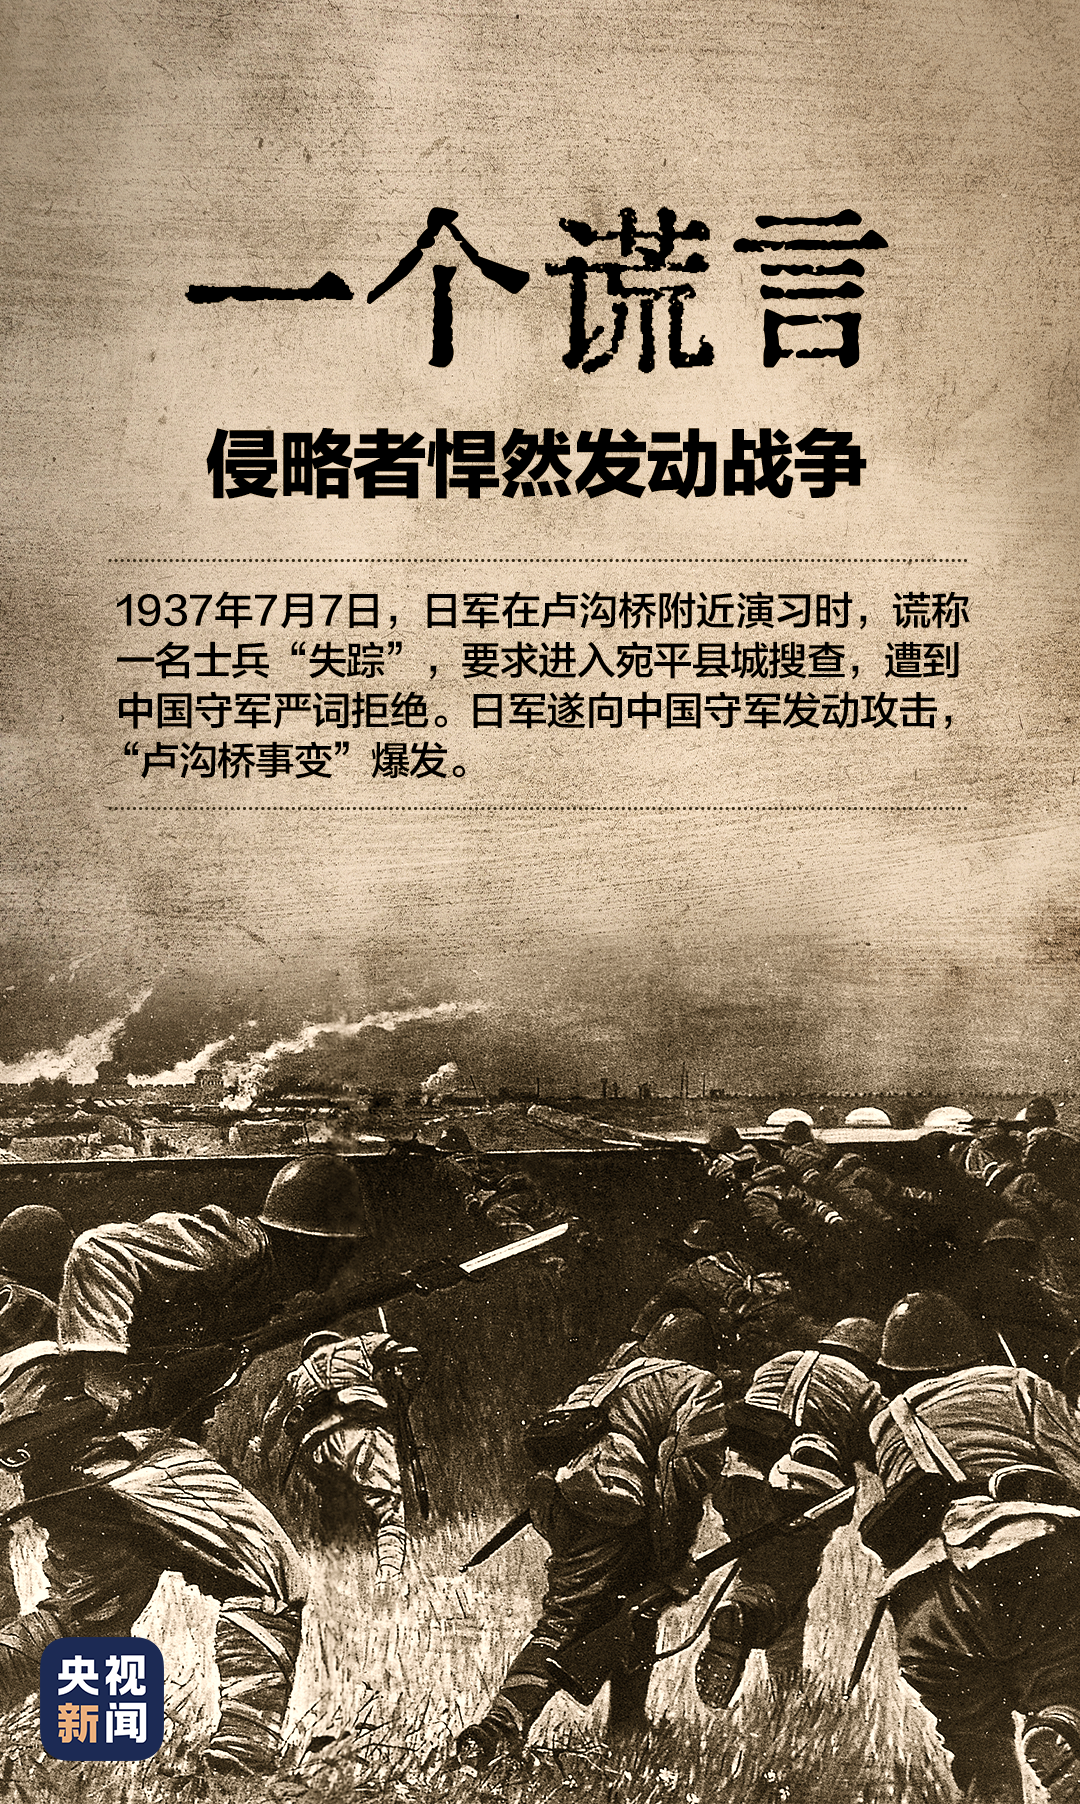 的想法: 1937年7月7日,七七事变爆发,拉开全民族抗战的序幕